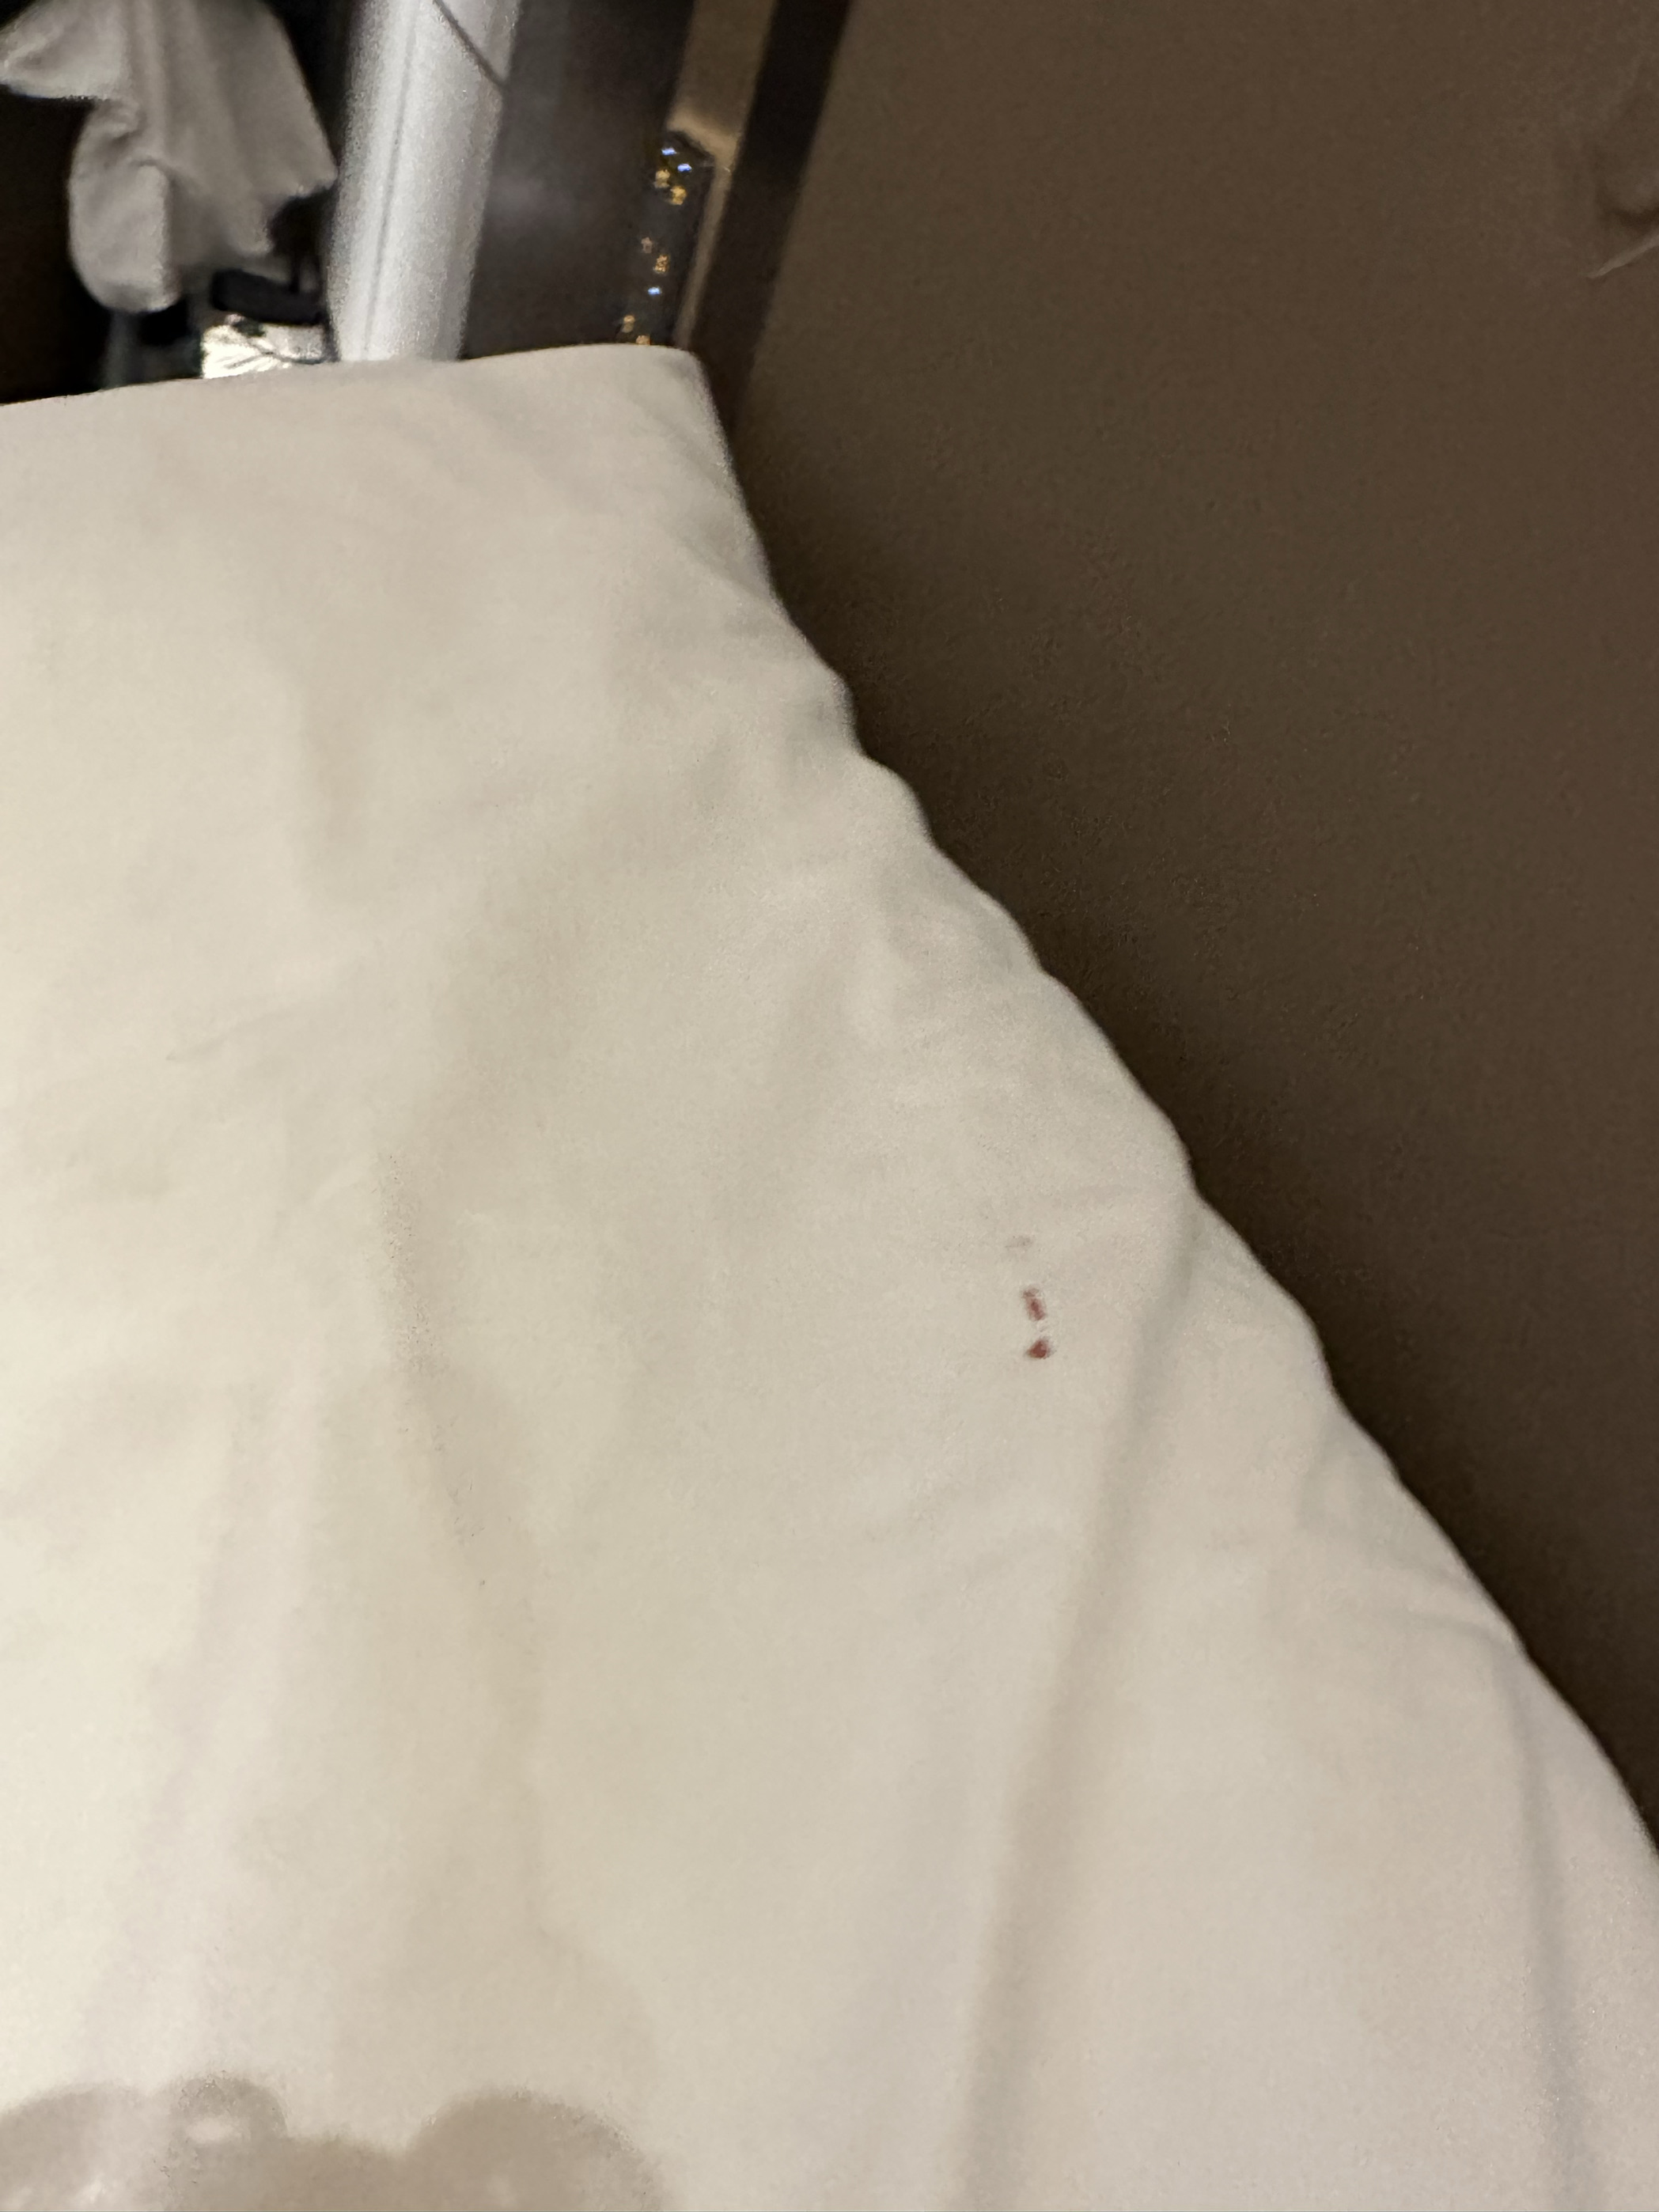 上次住床单上发现血渍忍了，自己带床单来了，这次住枕头发现了血渍，真的恶心死了，感觉哪哪都不干净，睡觉